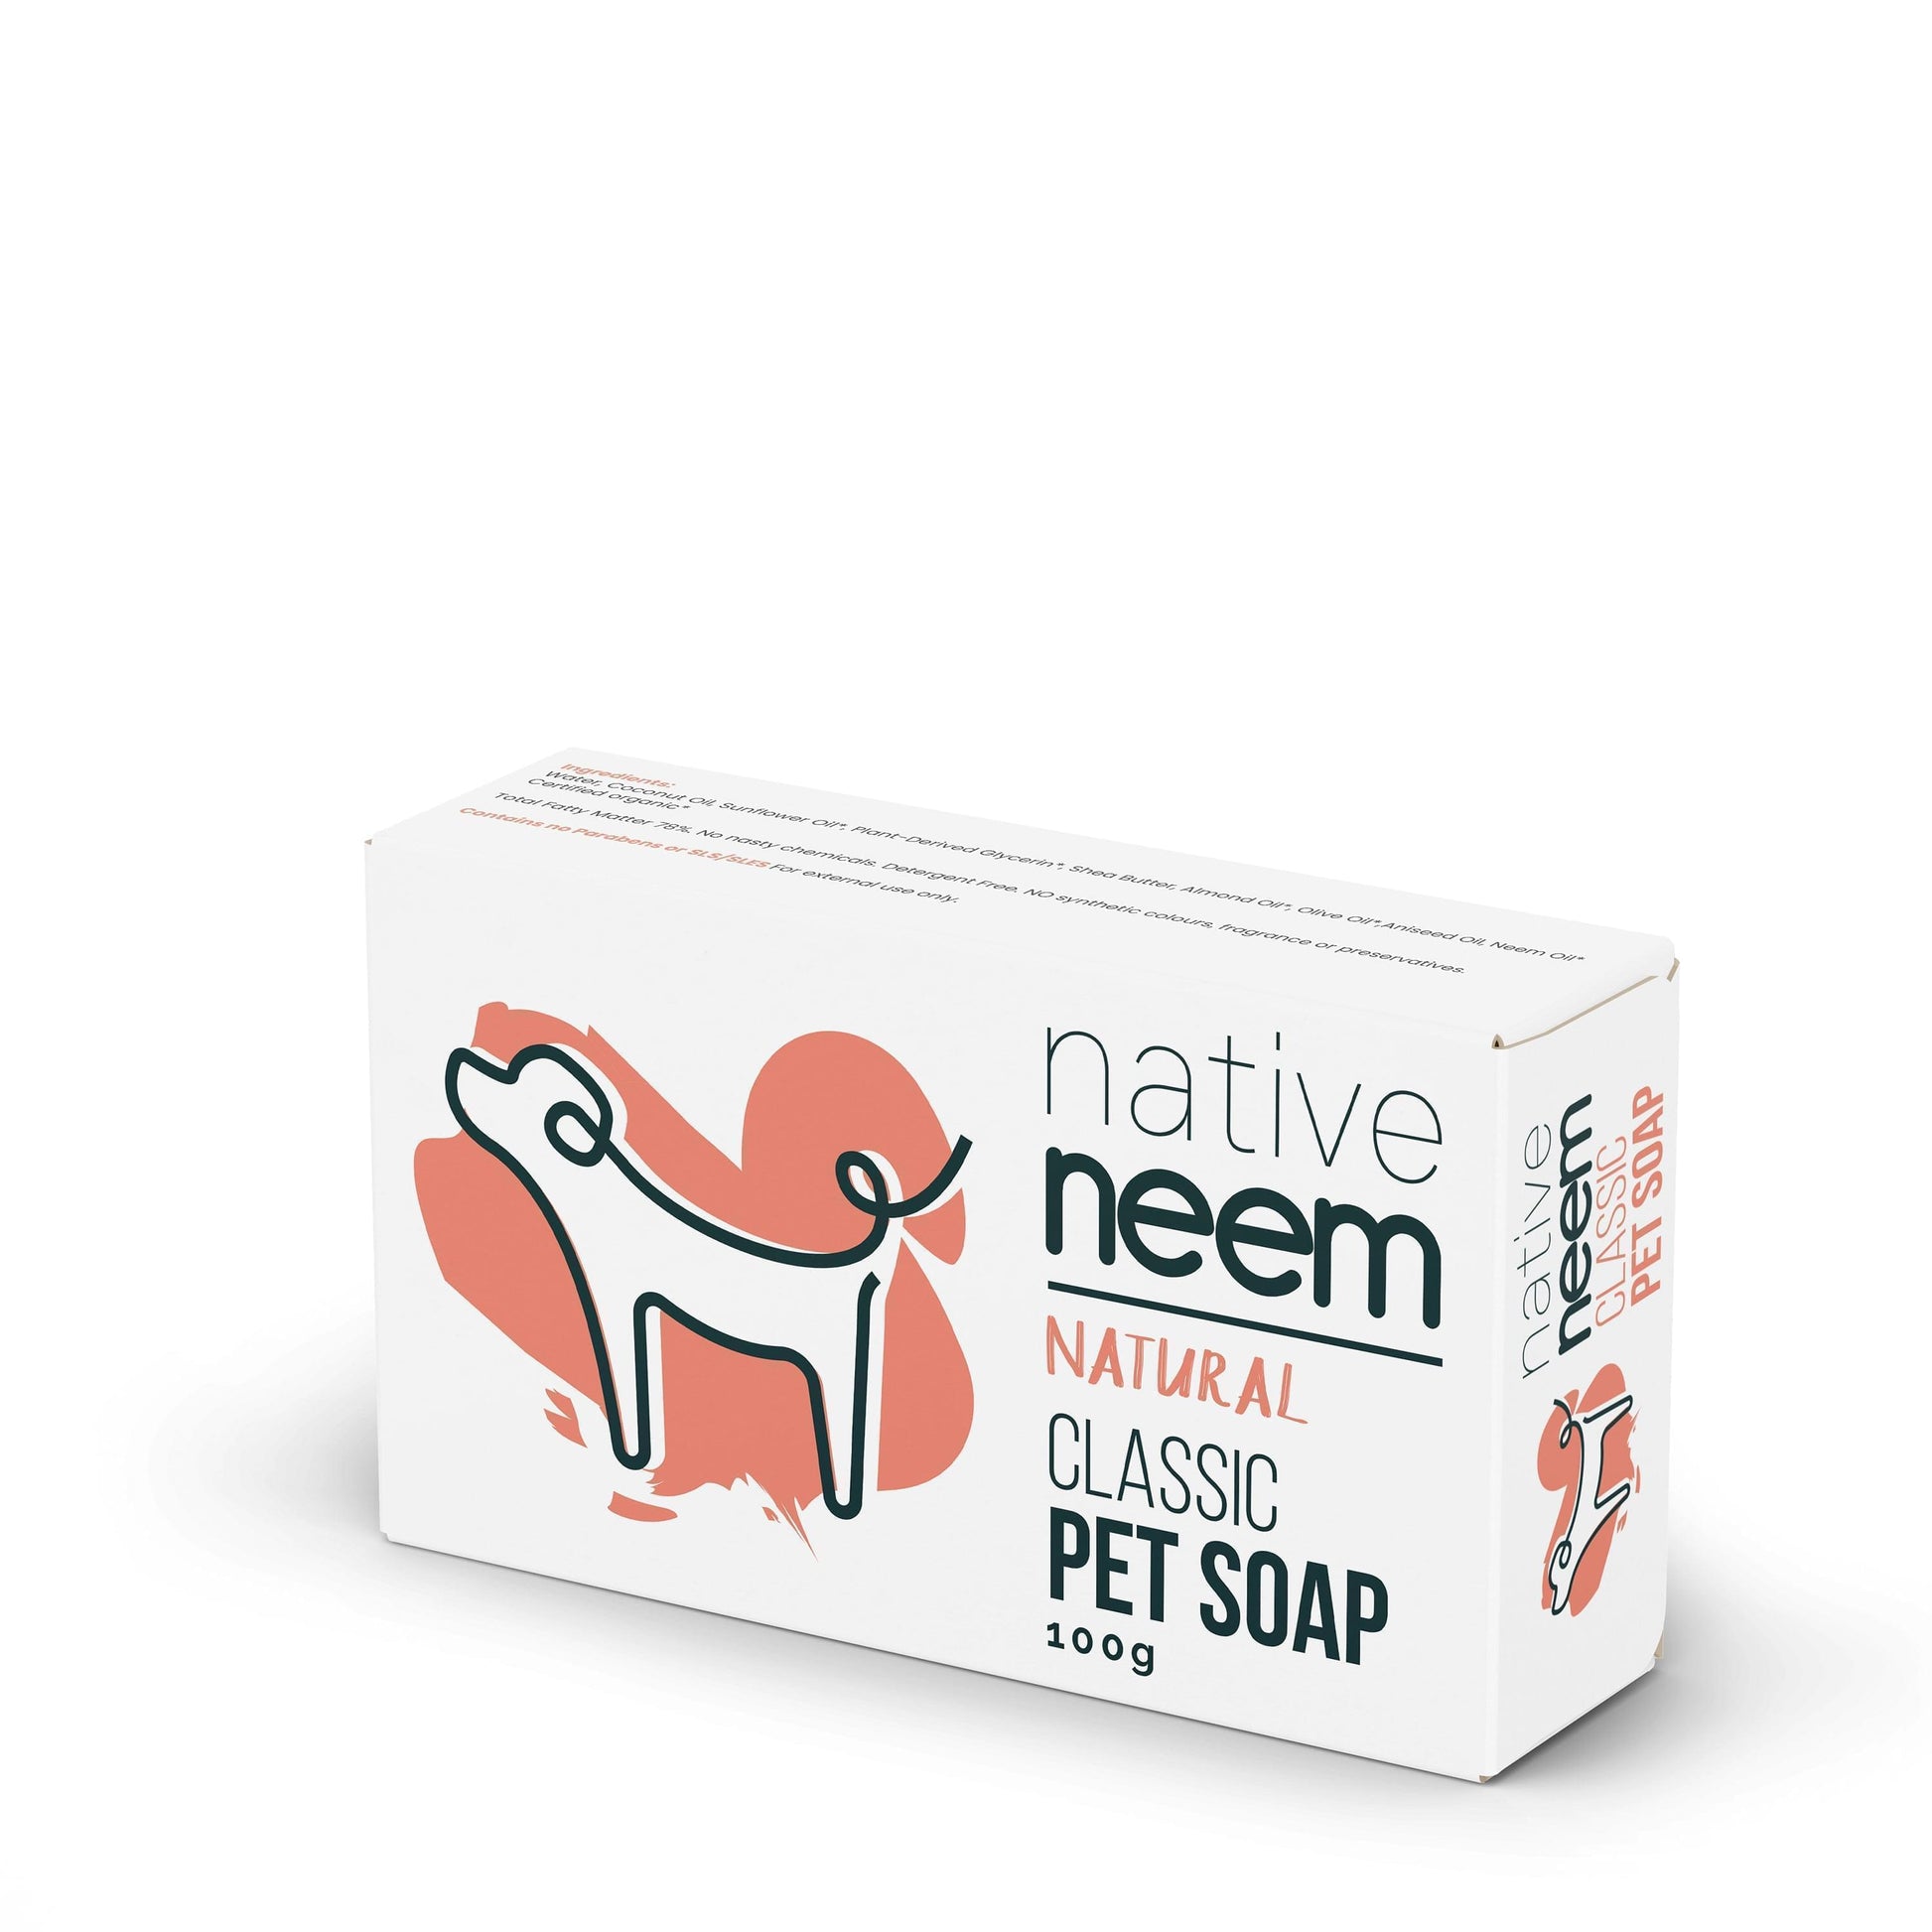 Organic Neem Pet Soap Bar 100g (Classic) - NativeNeem